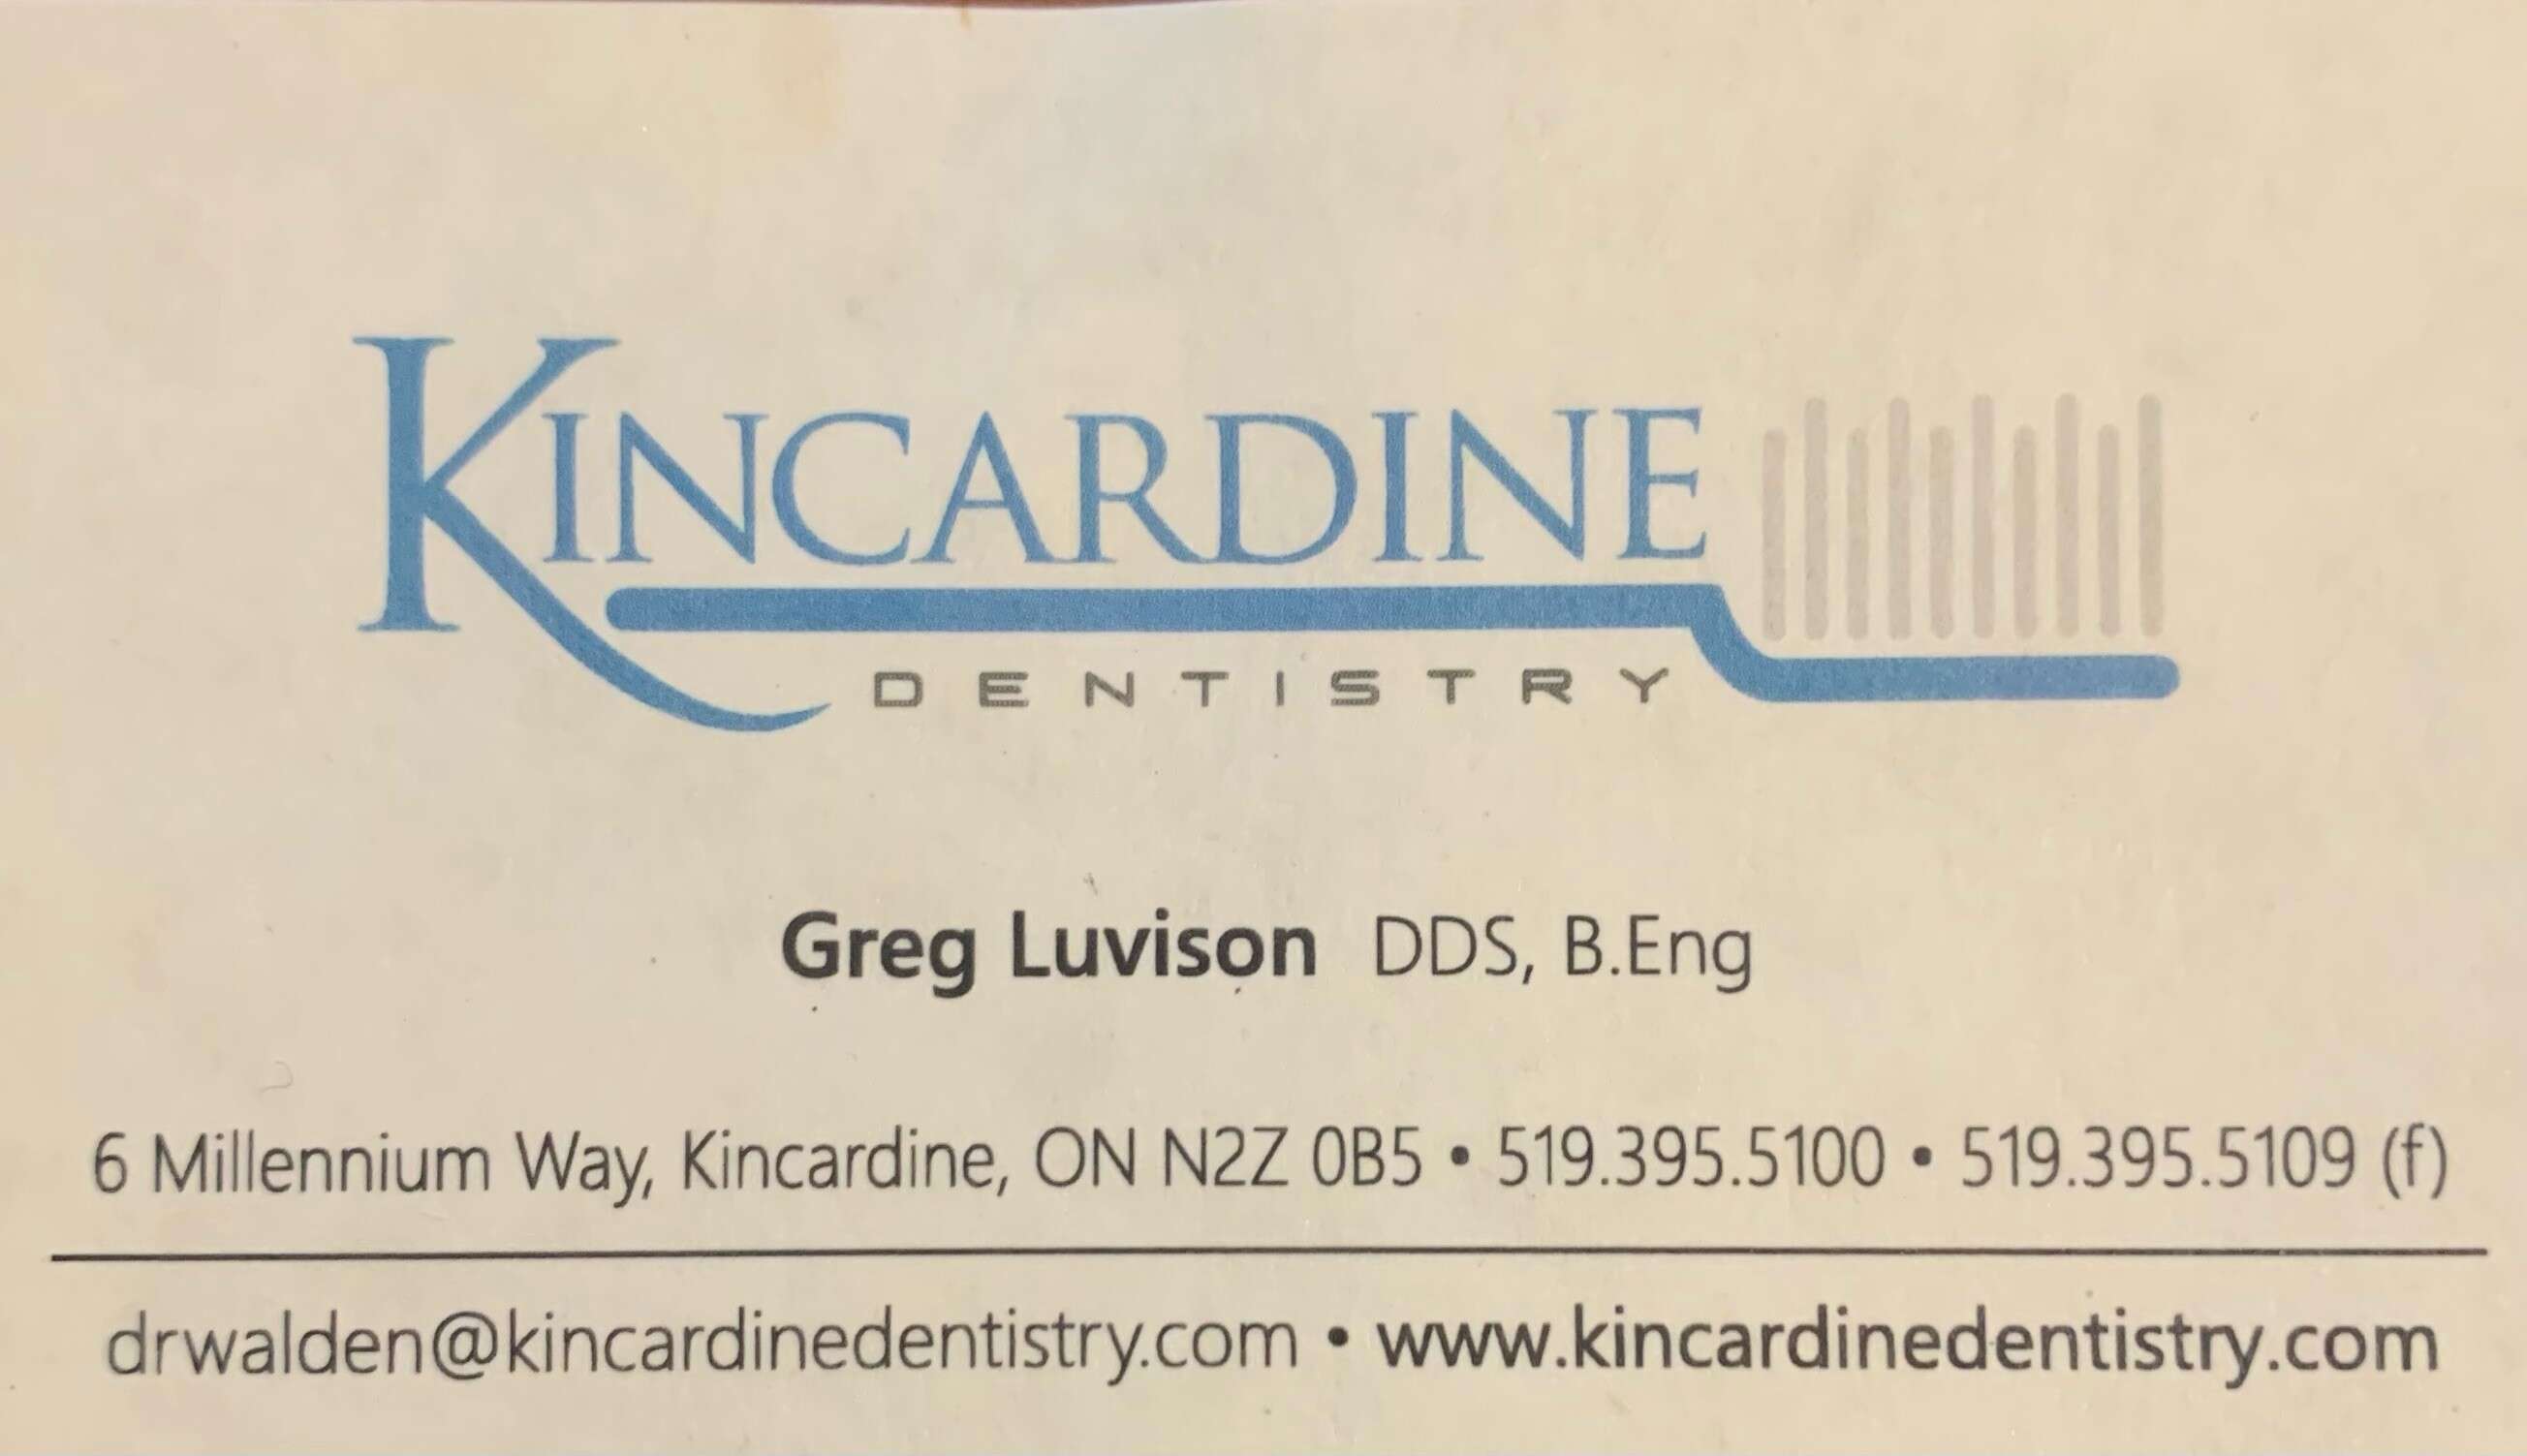 Kincardine Dentistry